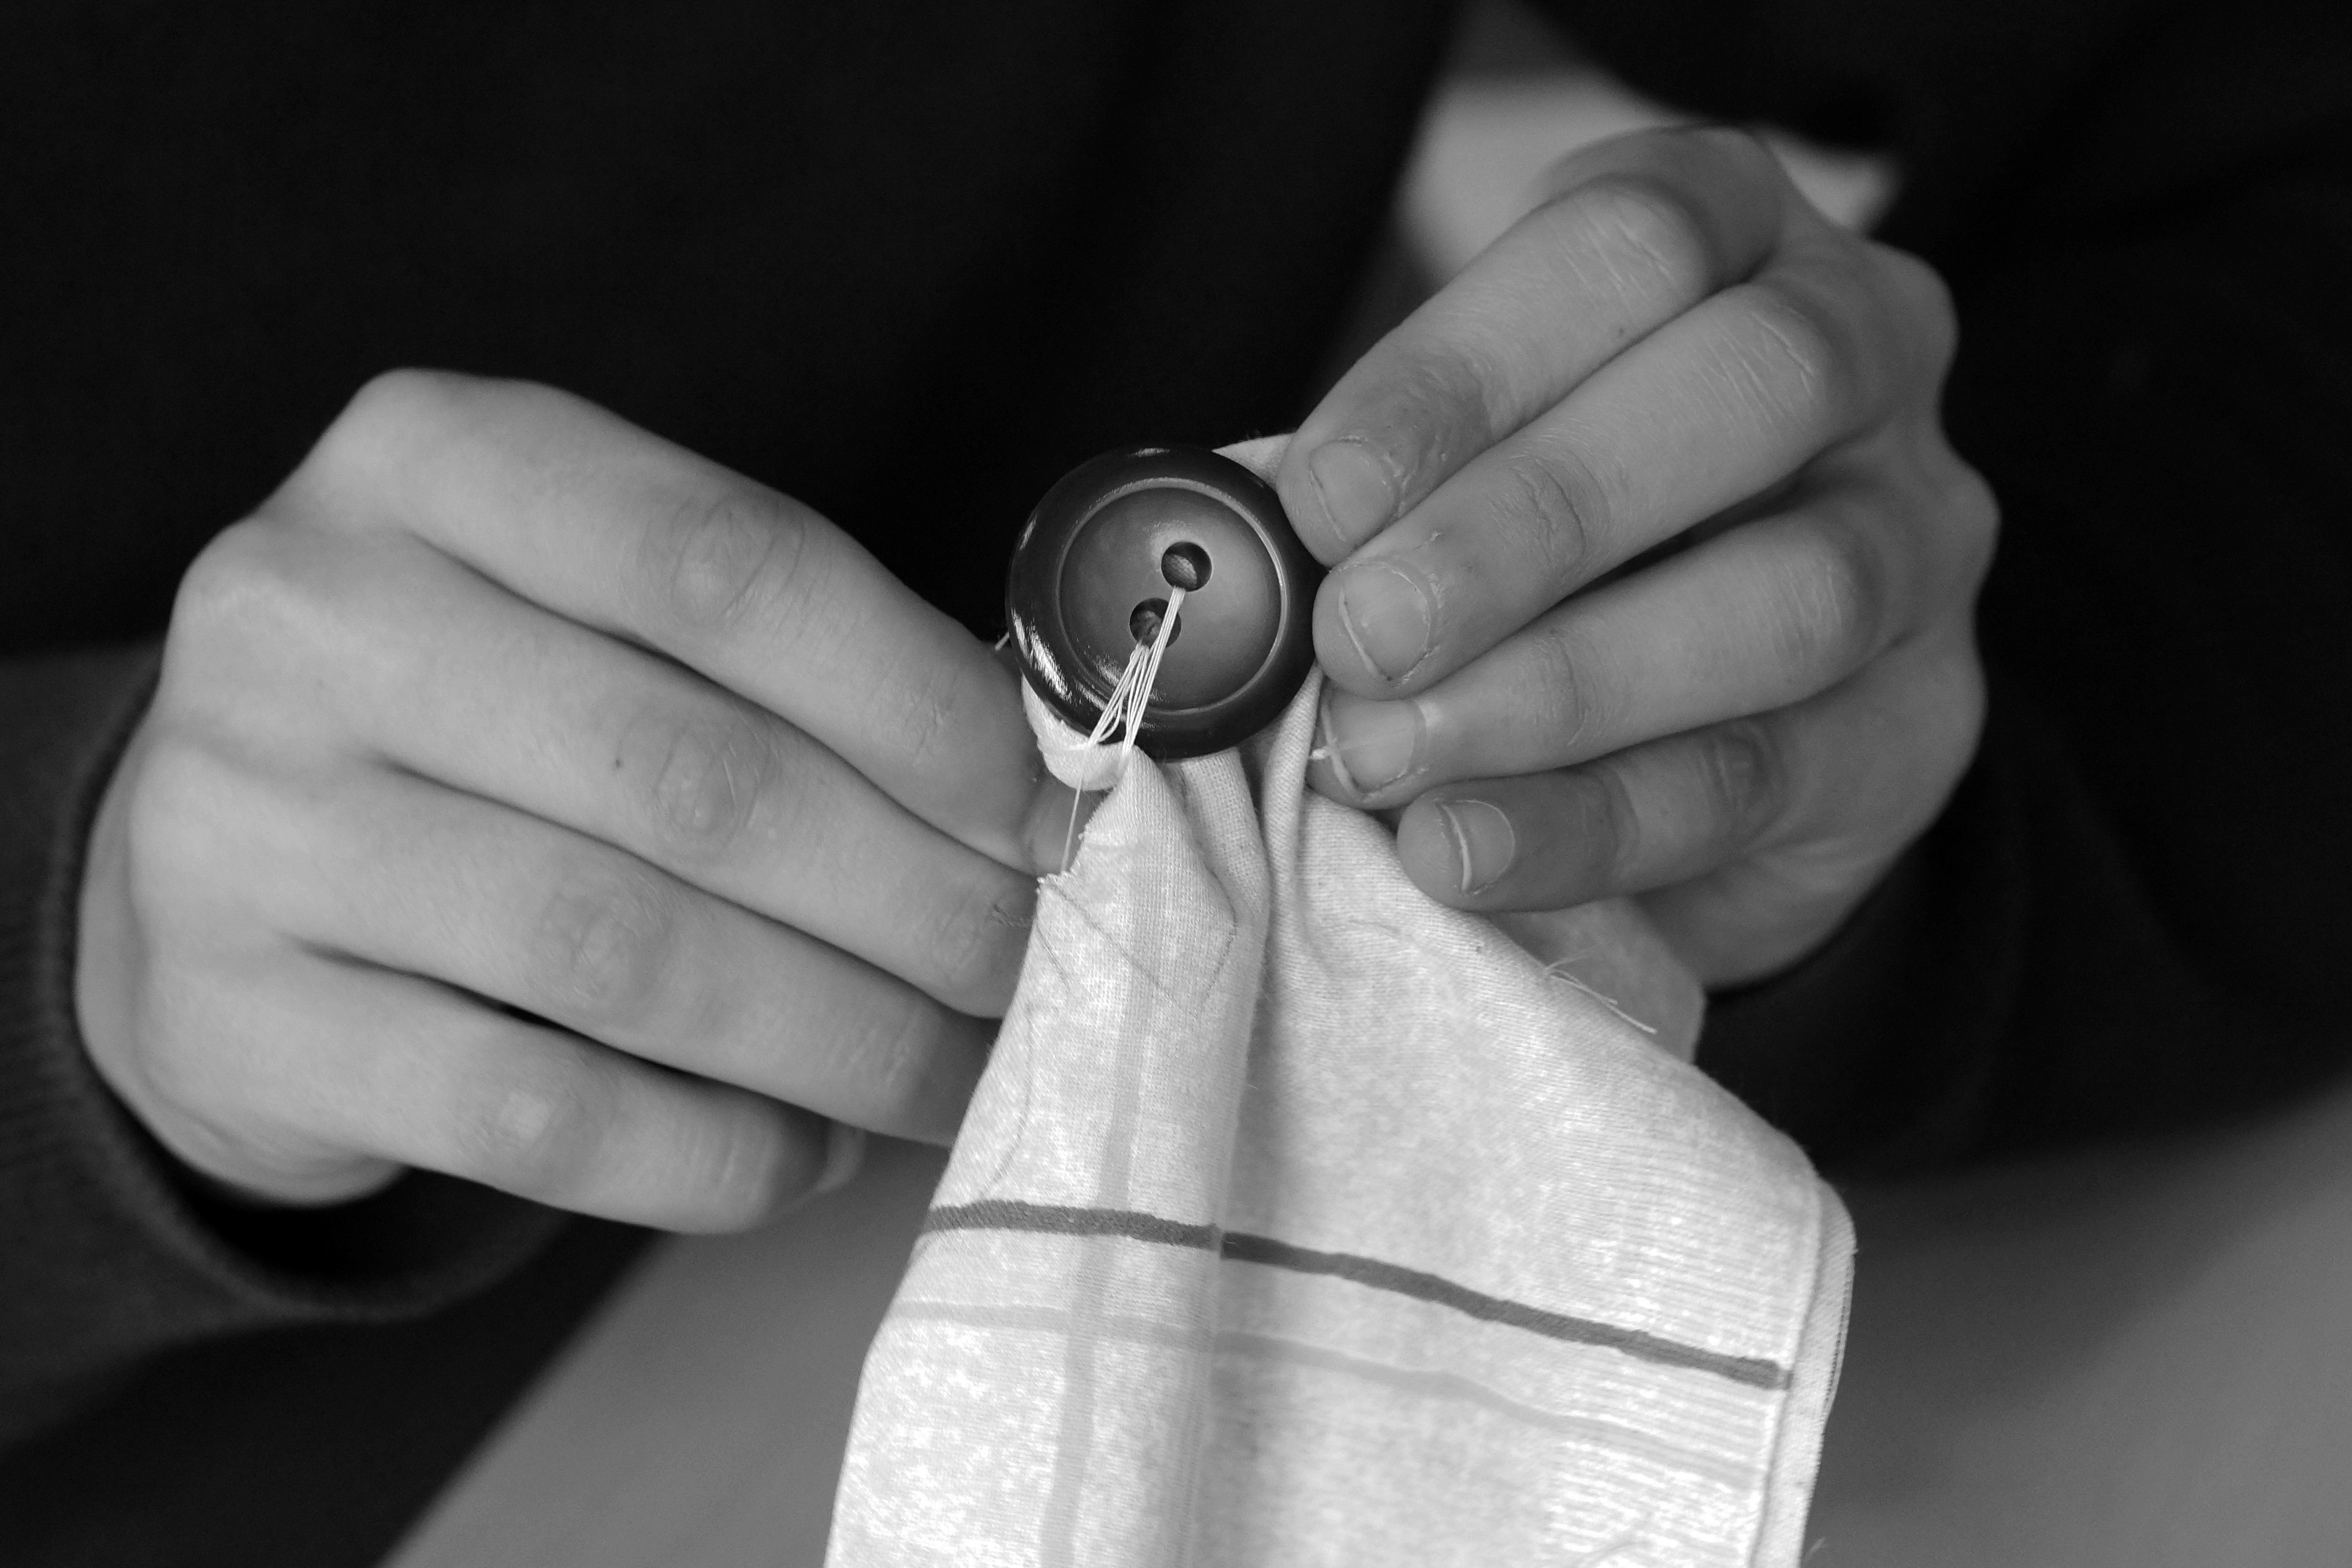 Foto: Zwei Hände, die einen Knopf an ein Tuch nähen.